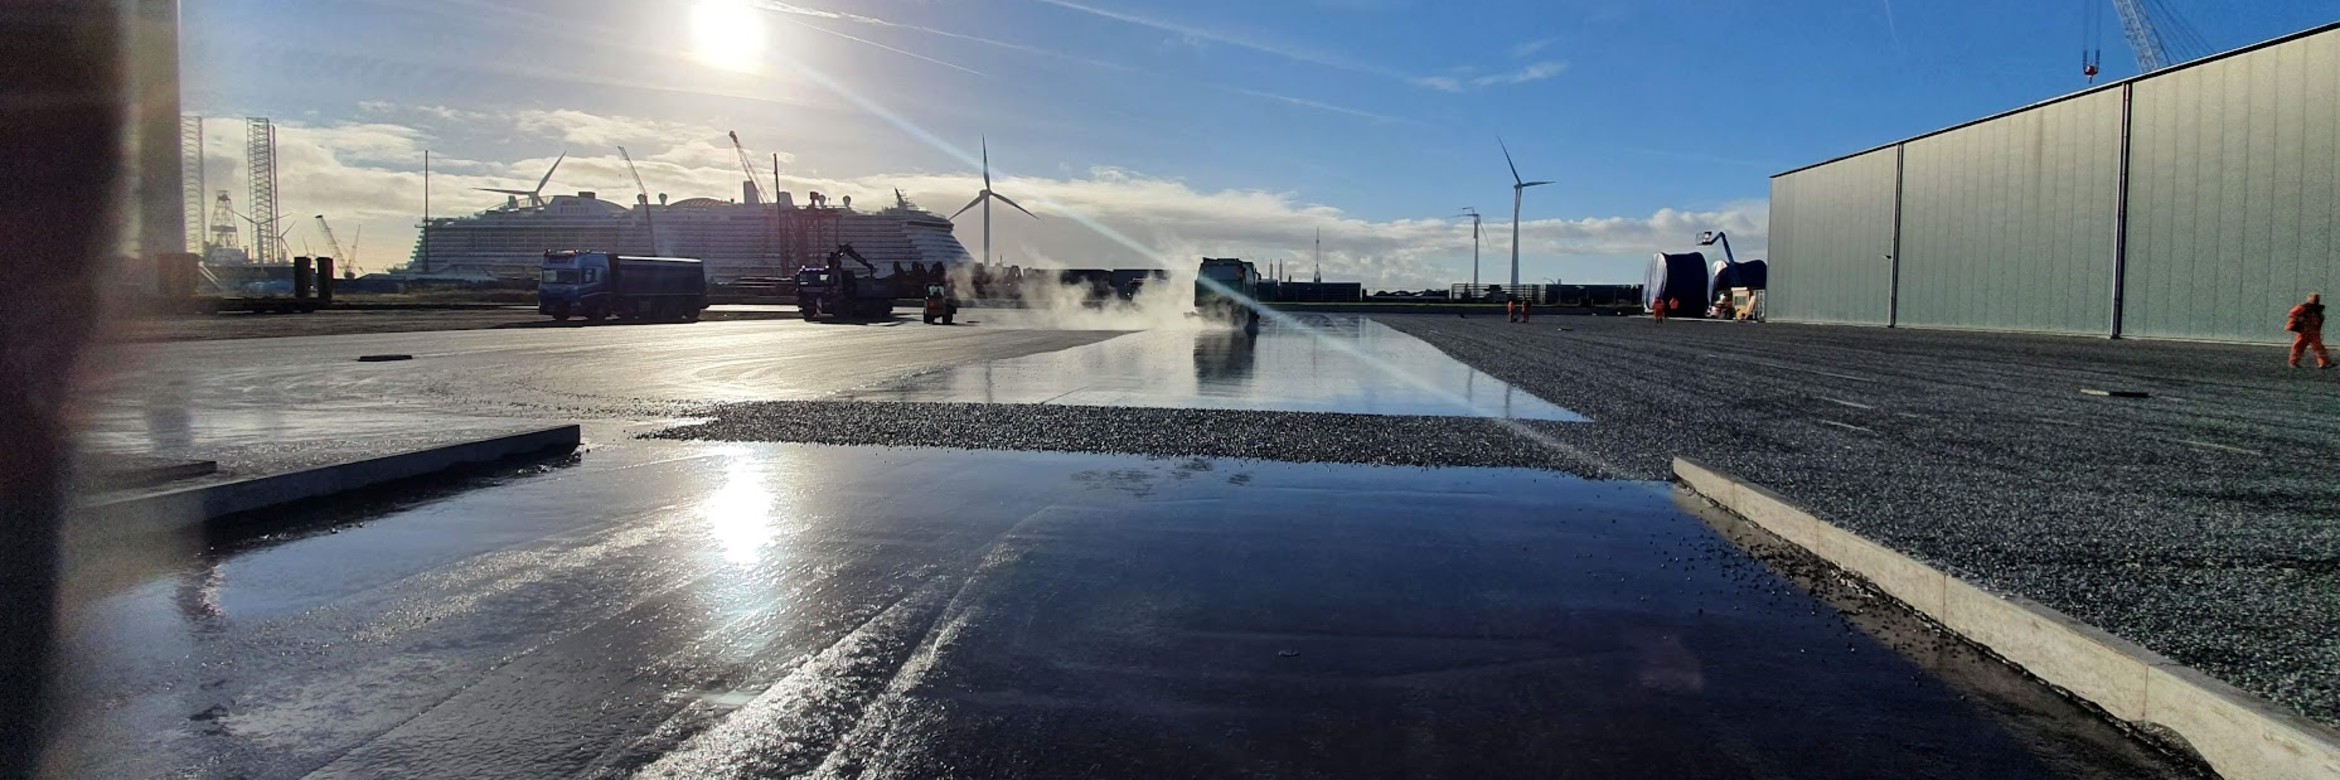 Vloeistofdichte asfaltvloer Eemshaven dankzij een SAMI behandeling van Esha